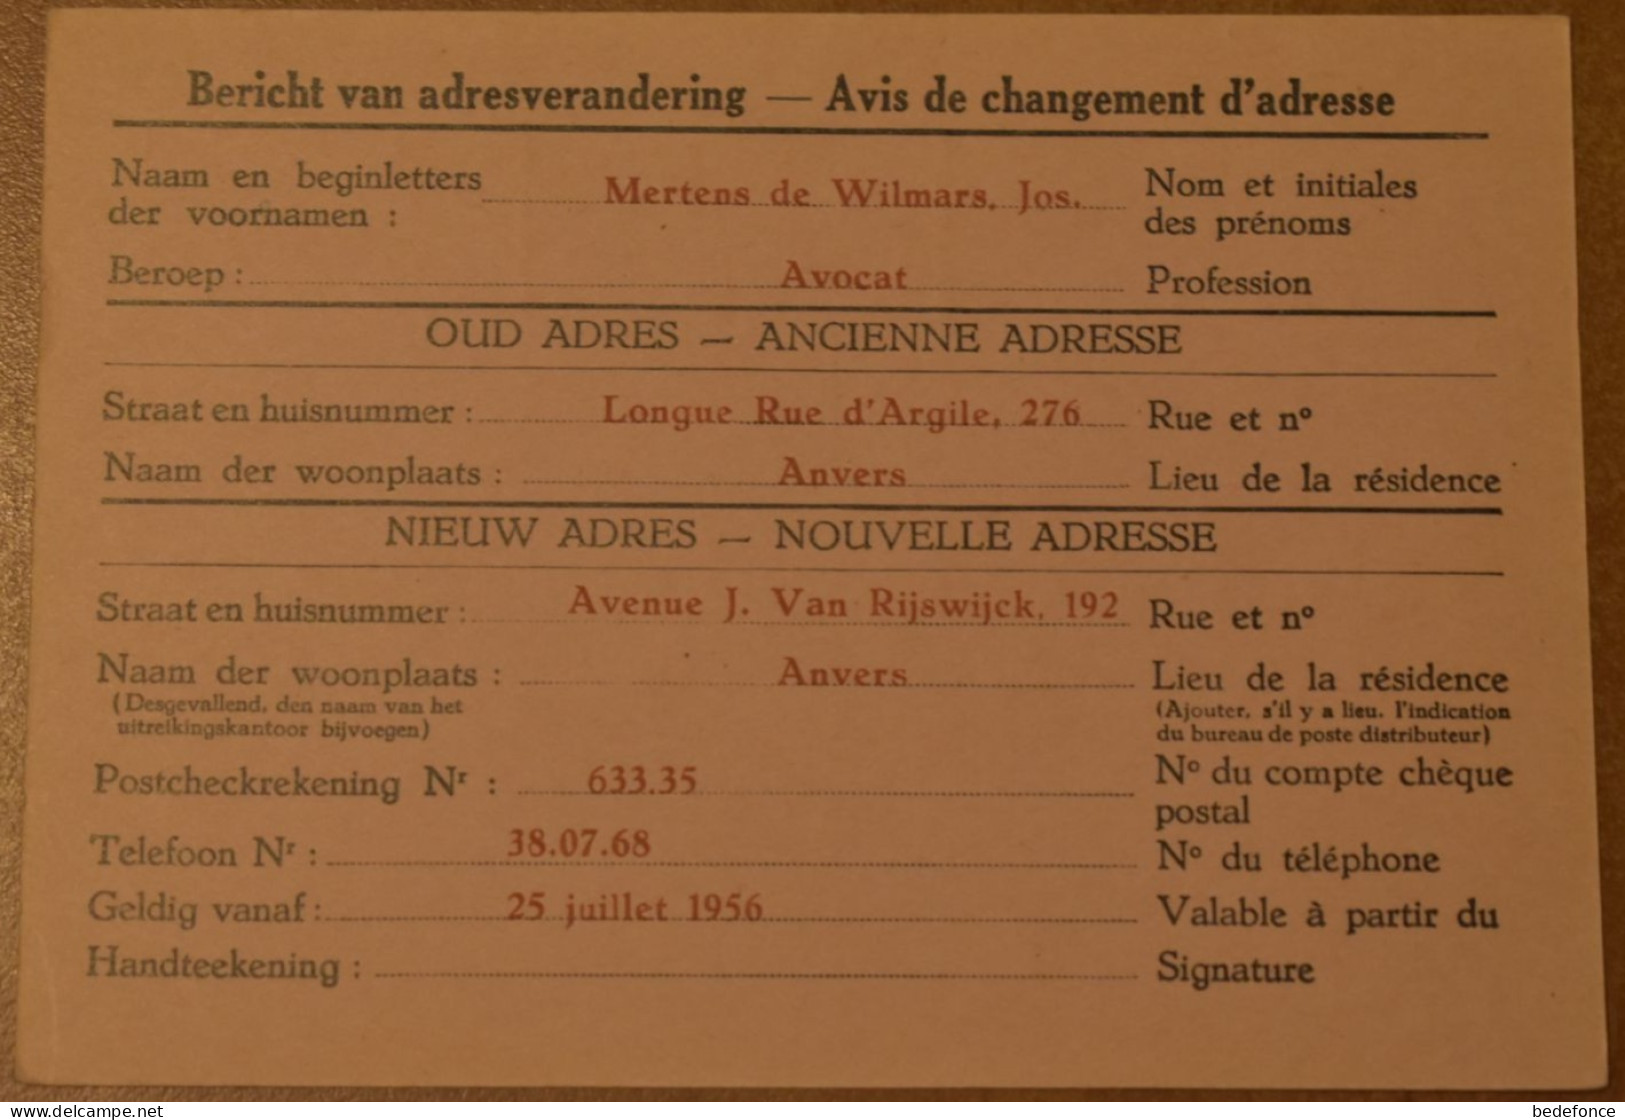 Belgique - Avis Changement Adresse - Prétimbrée - 20 C - Lion - Circulé En 1956 - Flamme "Drink Meer Melk" - Adressenänderungen